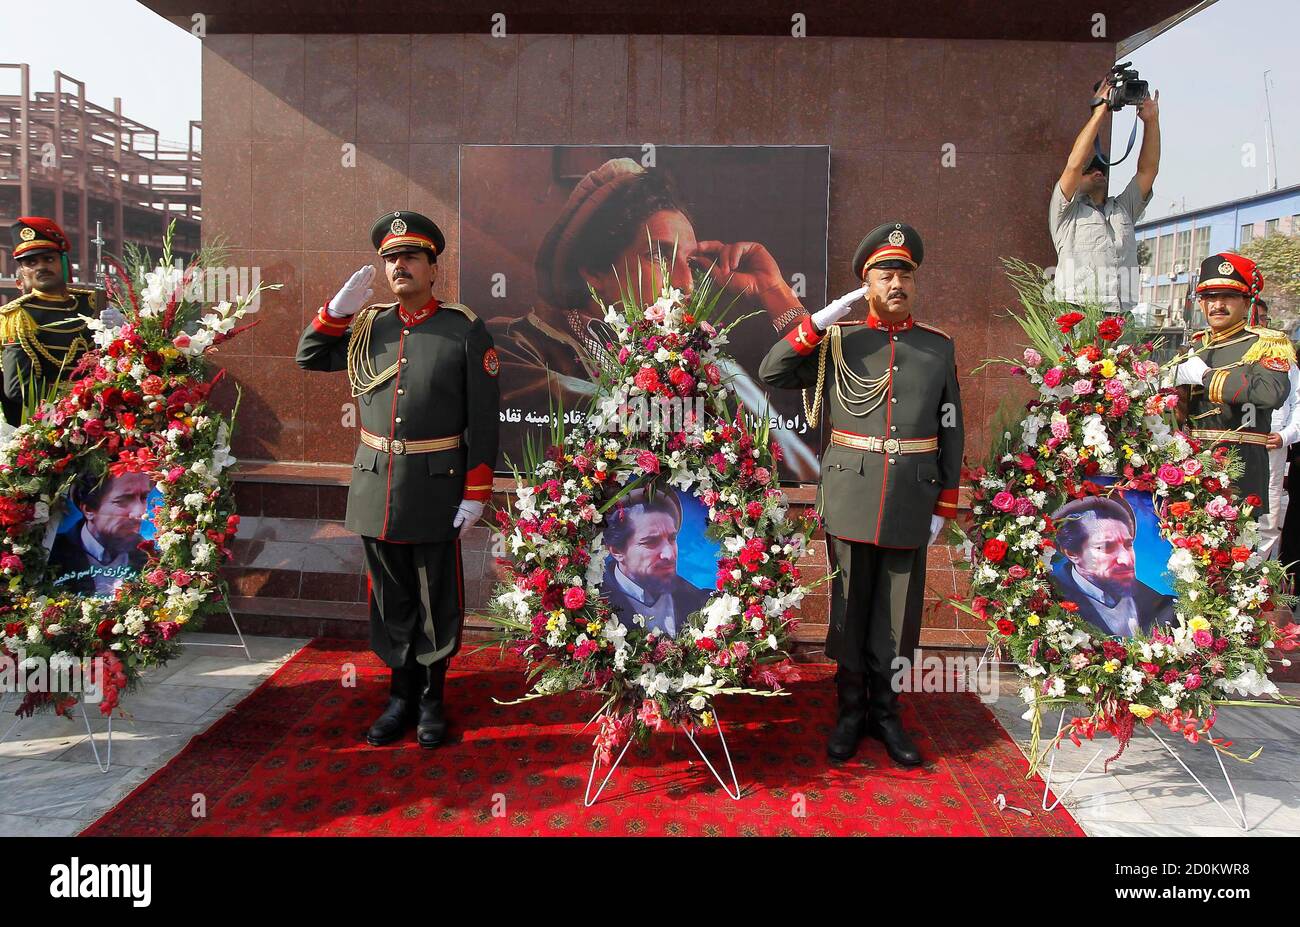 Eine afghanische Ehrengarde steht neben einen Kranz aus Blumen anlässlich der 10. Todestag des ermordeten afghanischen Nationalhelden Ahmad Shah Masood in Kabul 9. September 2011. Massoud oder Löwe von Panjshir gekämpft die Taliban an der Spitze der Nordallianz Afghanistans ethnischen Minderheiten, bis zu seiner Ermordung zwei Tage vor den Anschlägen des 11. September 2001 vertreten.  REUTERS/Omar Sobhani (AFGHANISTAN - Tags: Politik Jubiläum Unruhen) Stockfoto